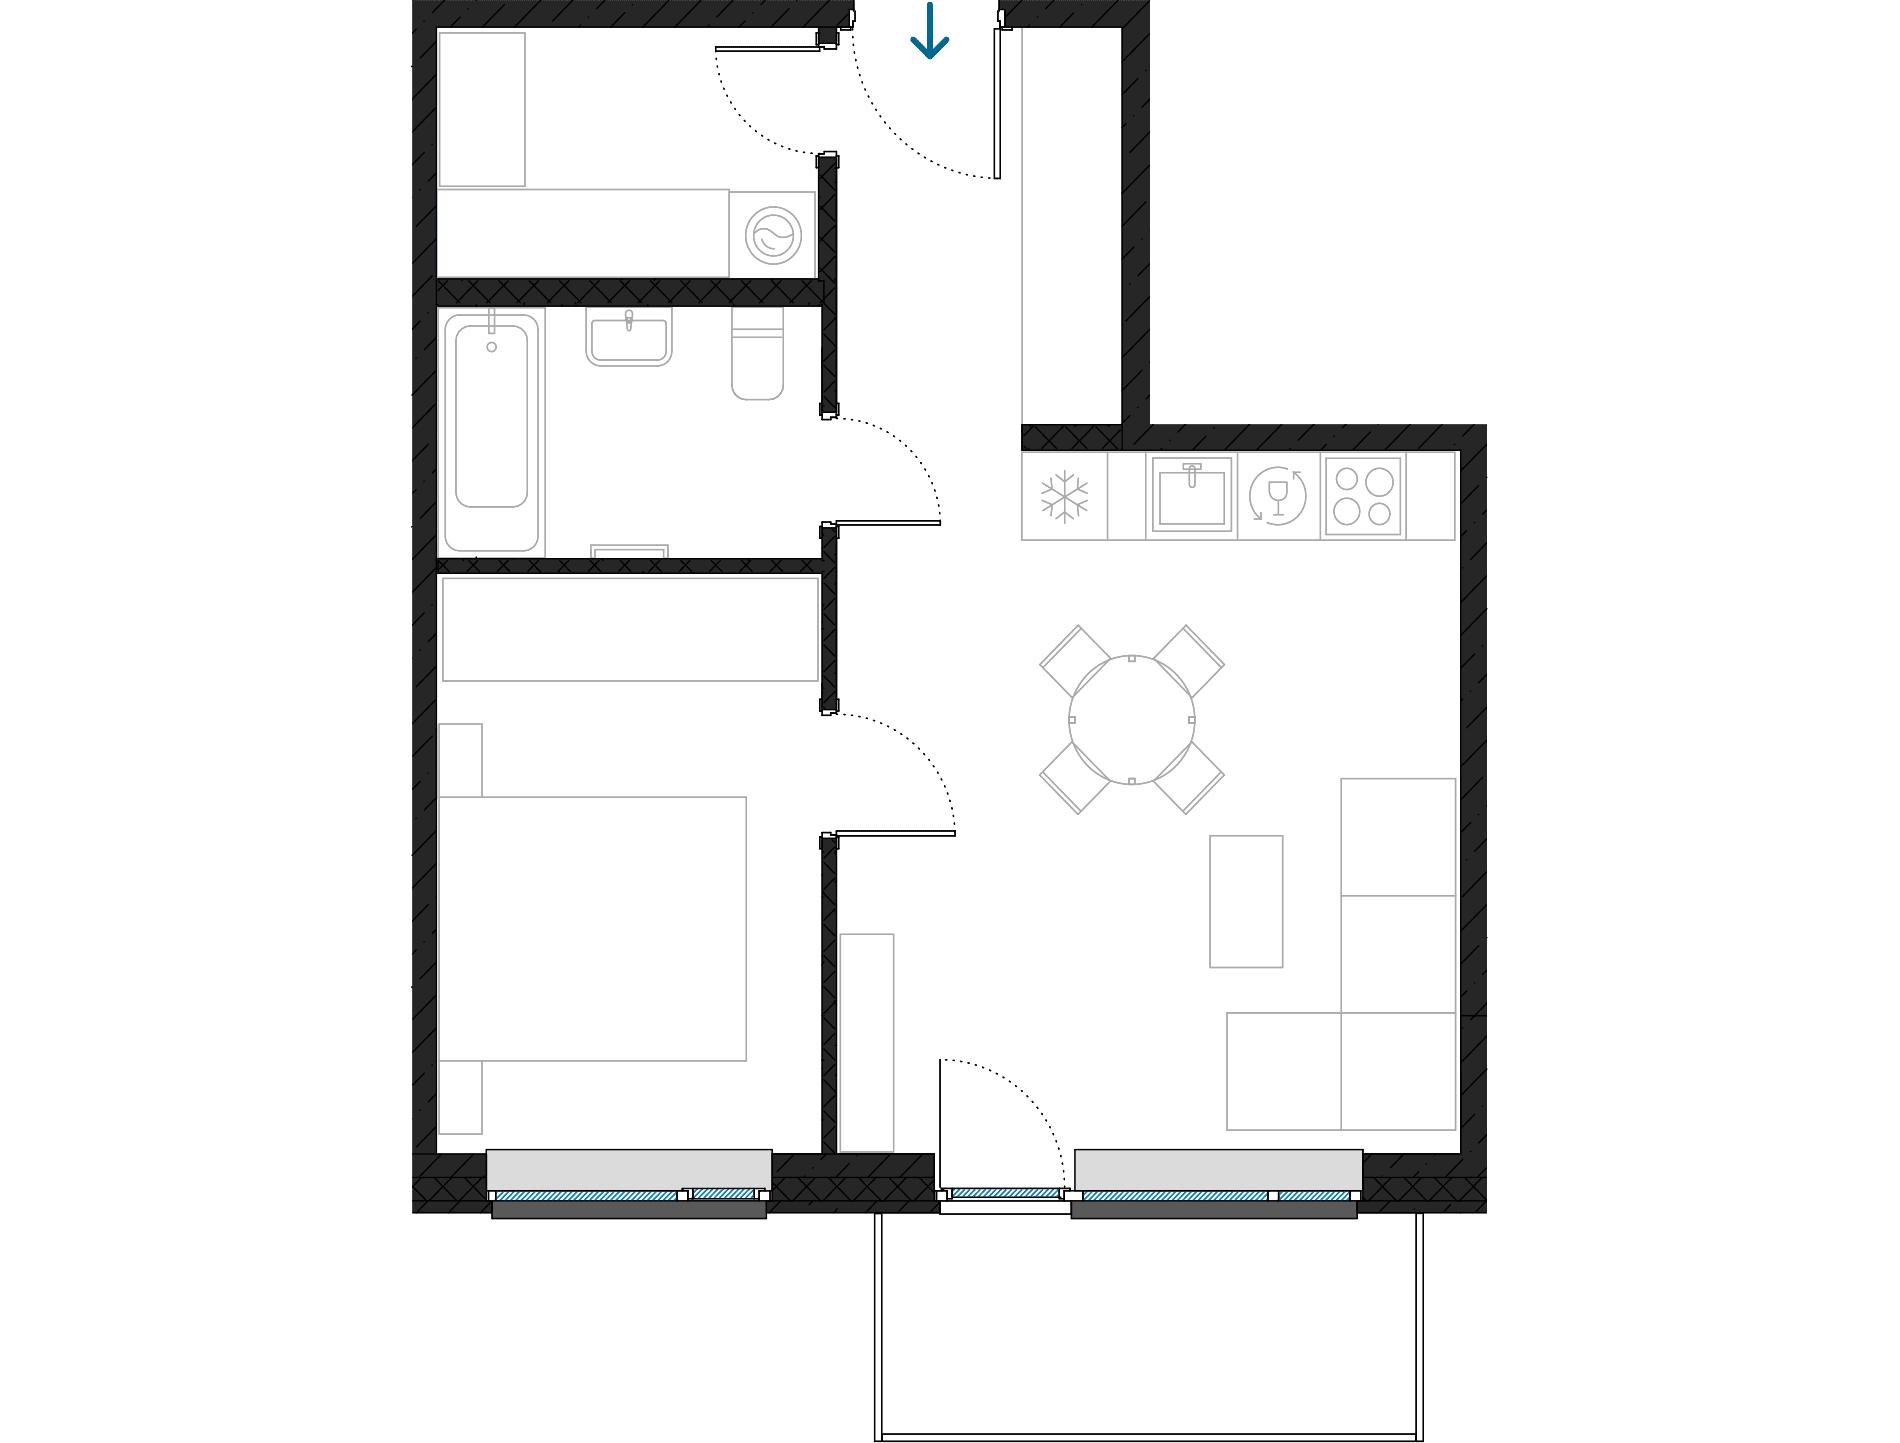 2A-1a floorplan